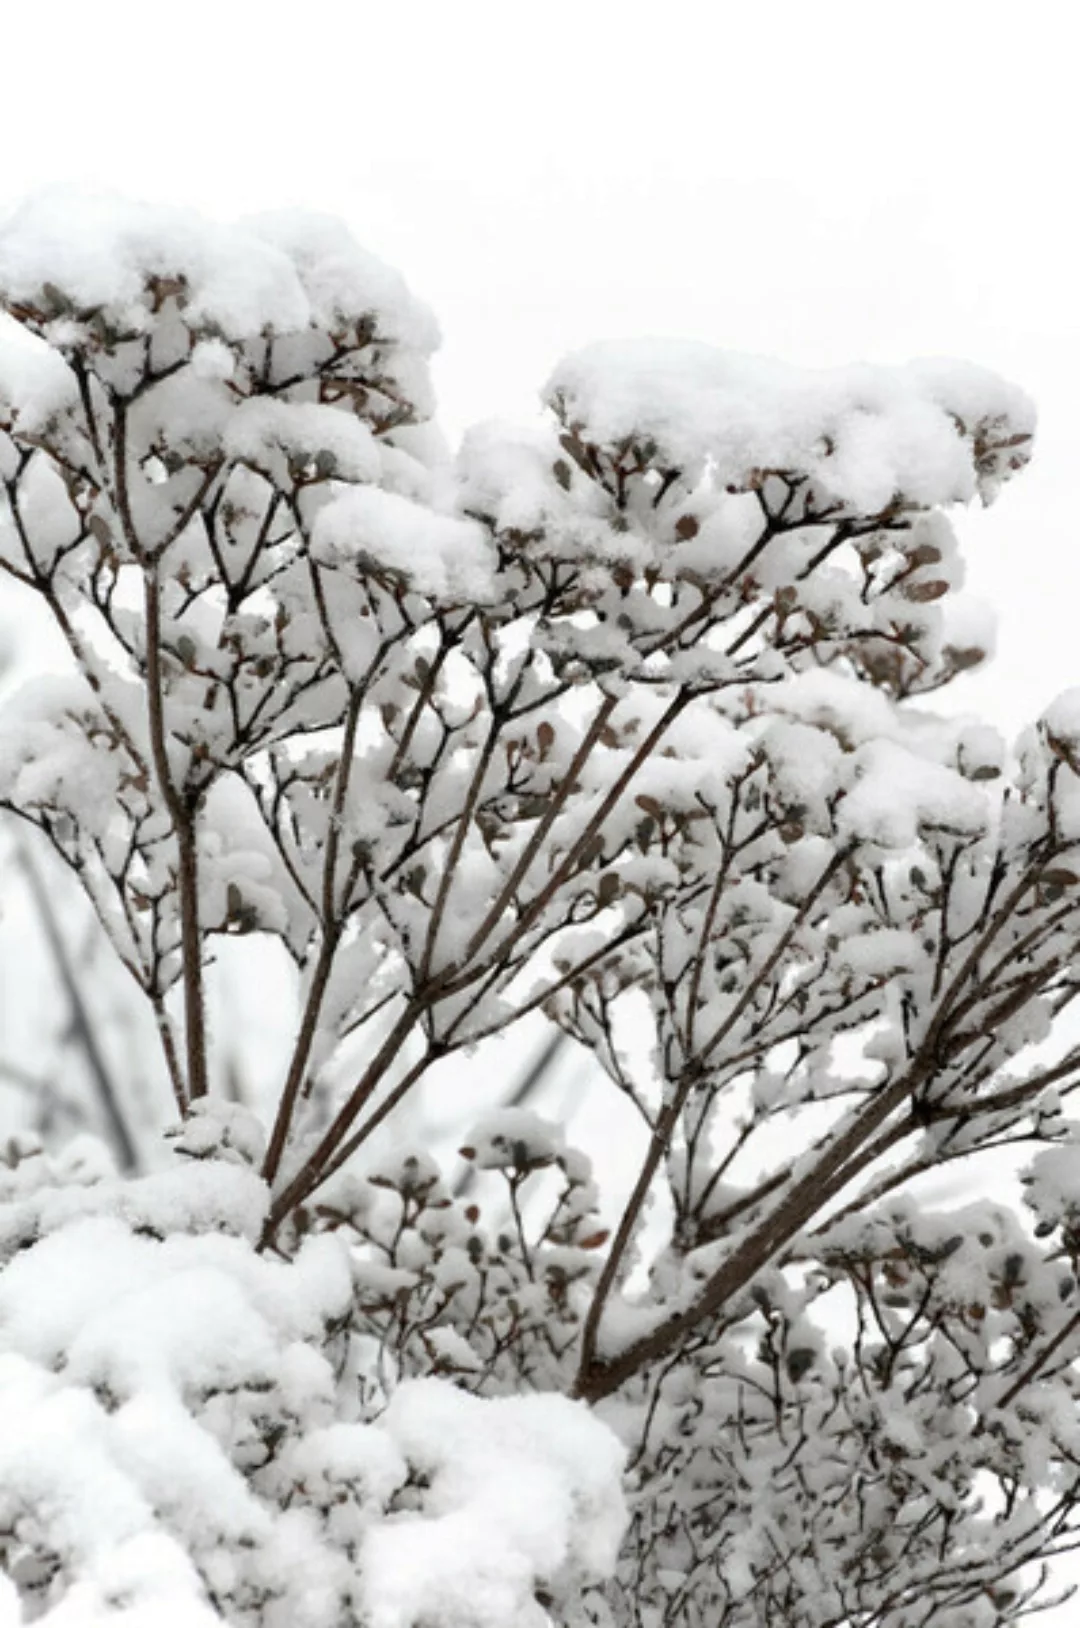 Poster / Leinwandbild - Snowy White Flower Branches günstig online kaufen